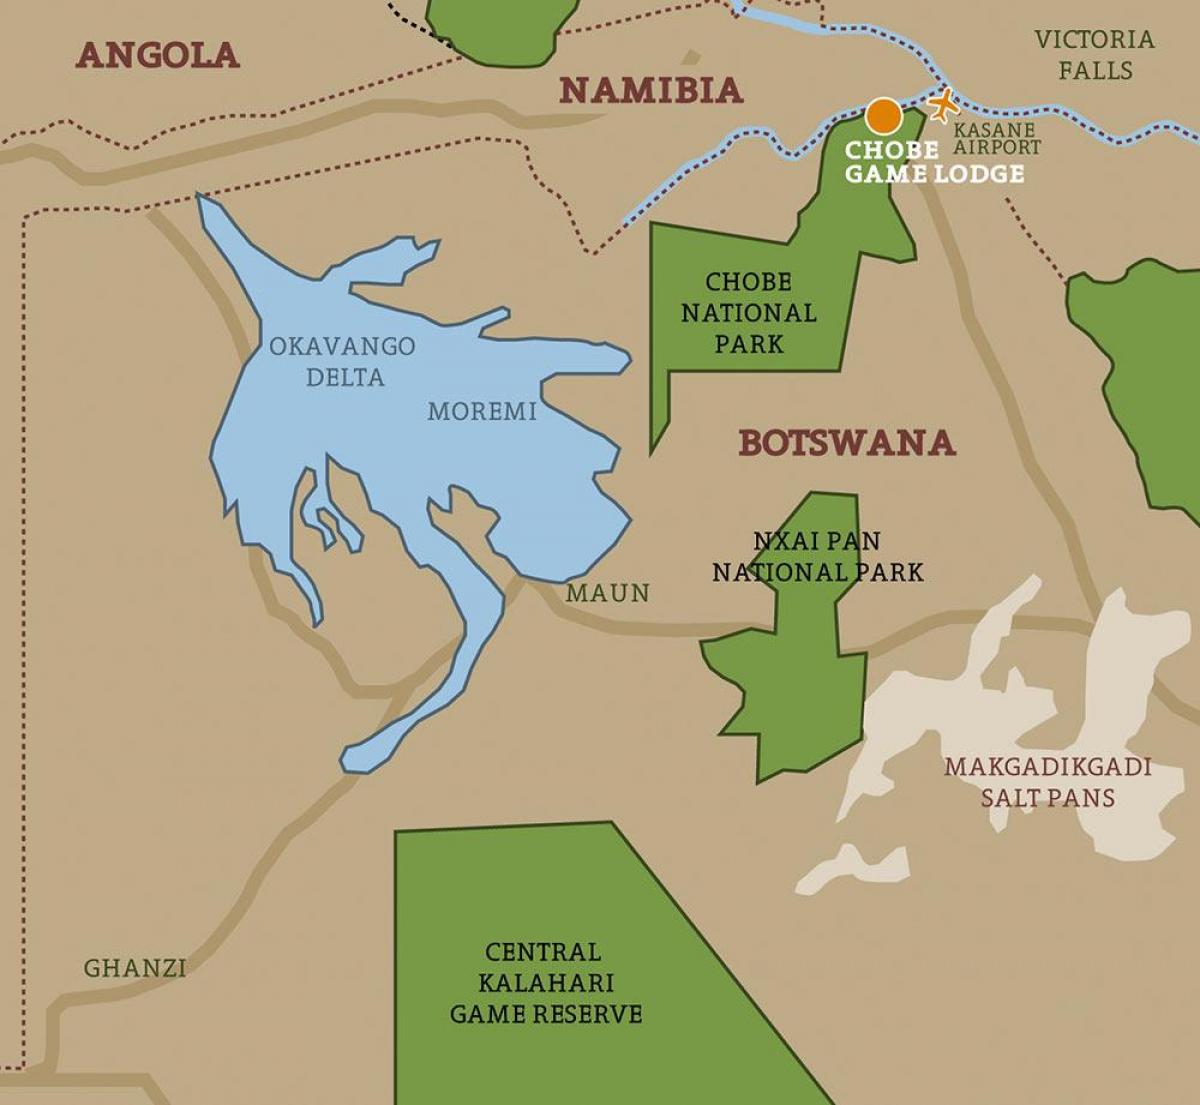 зураг ботсвана улс байгалийн цогцолборт газрын зураг